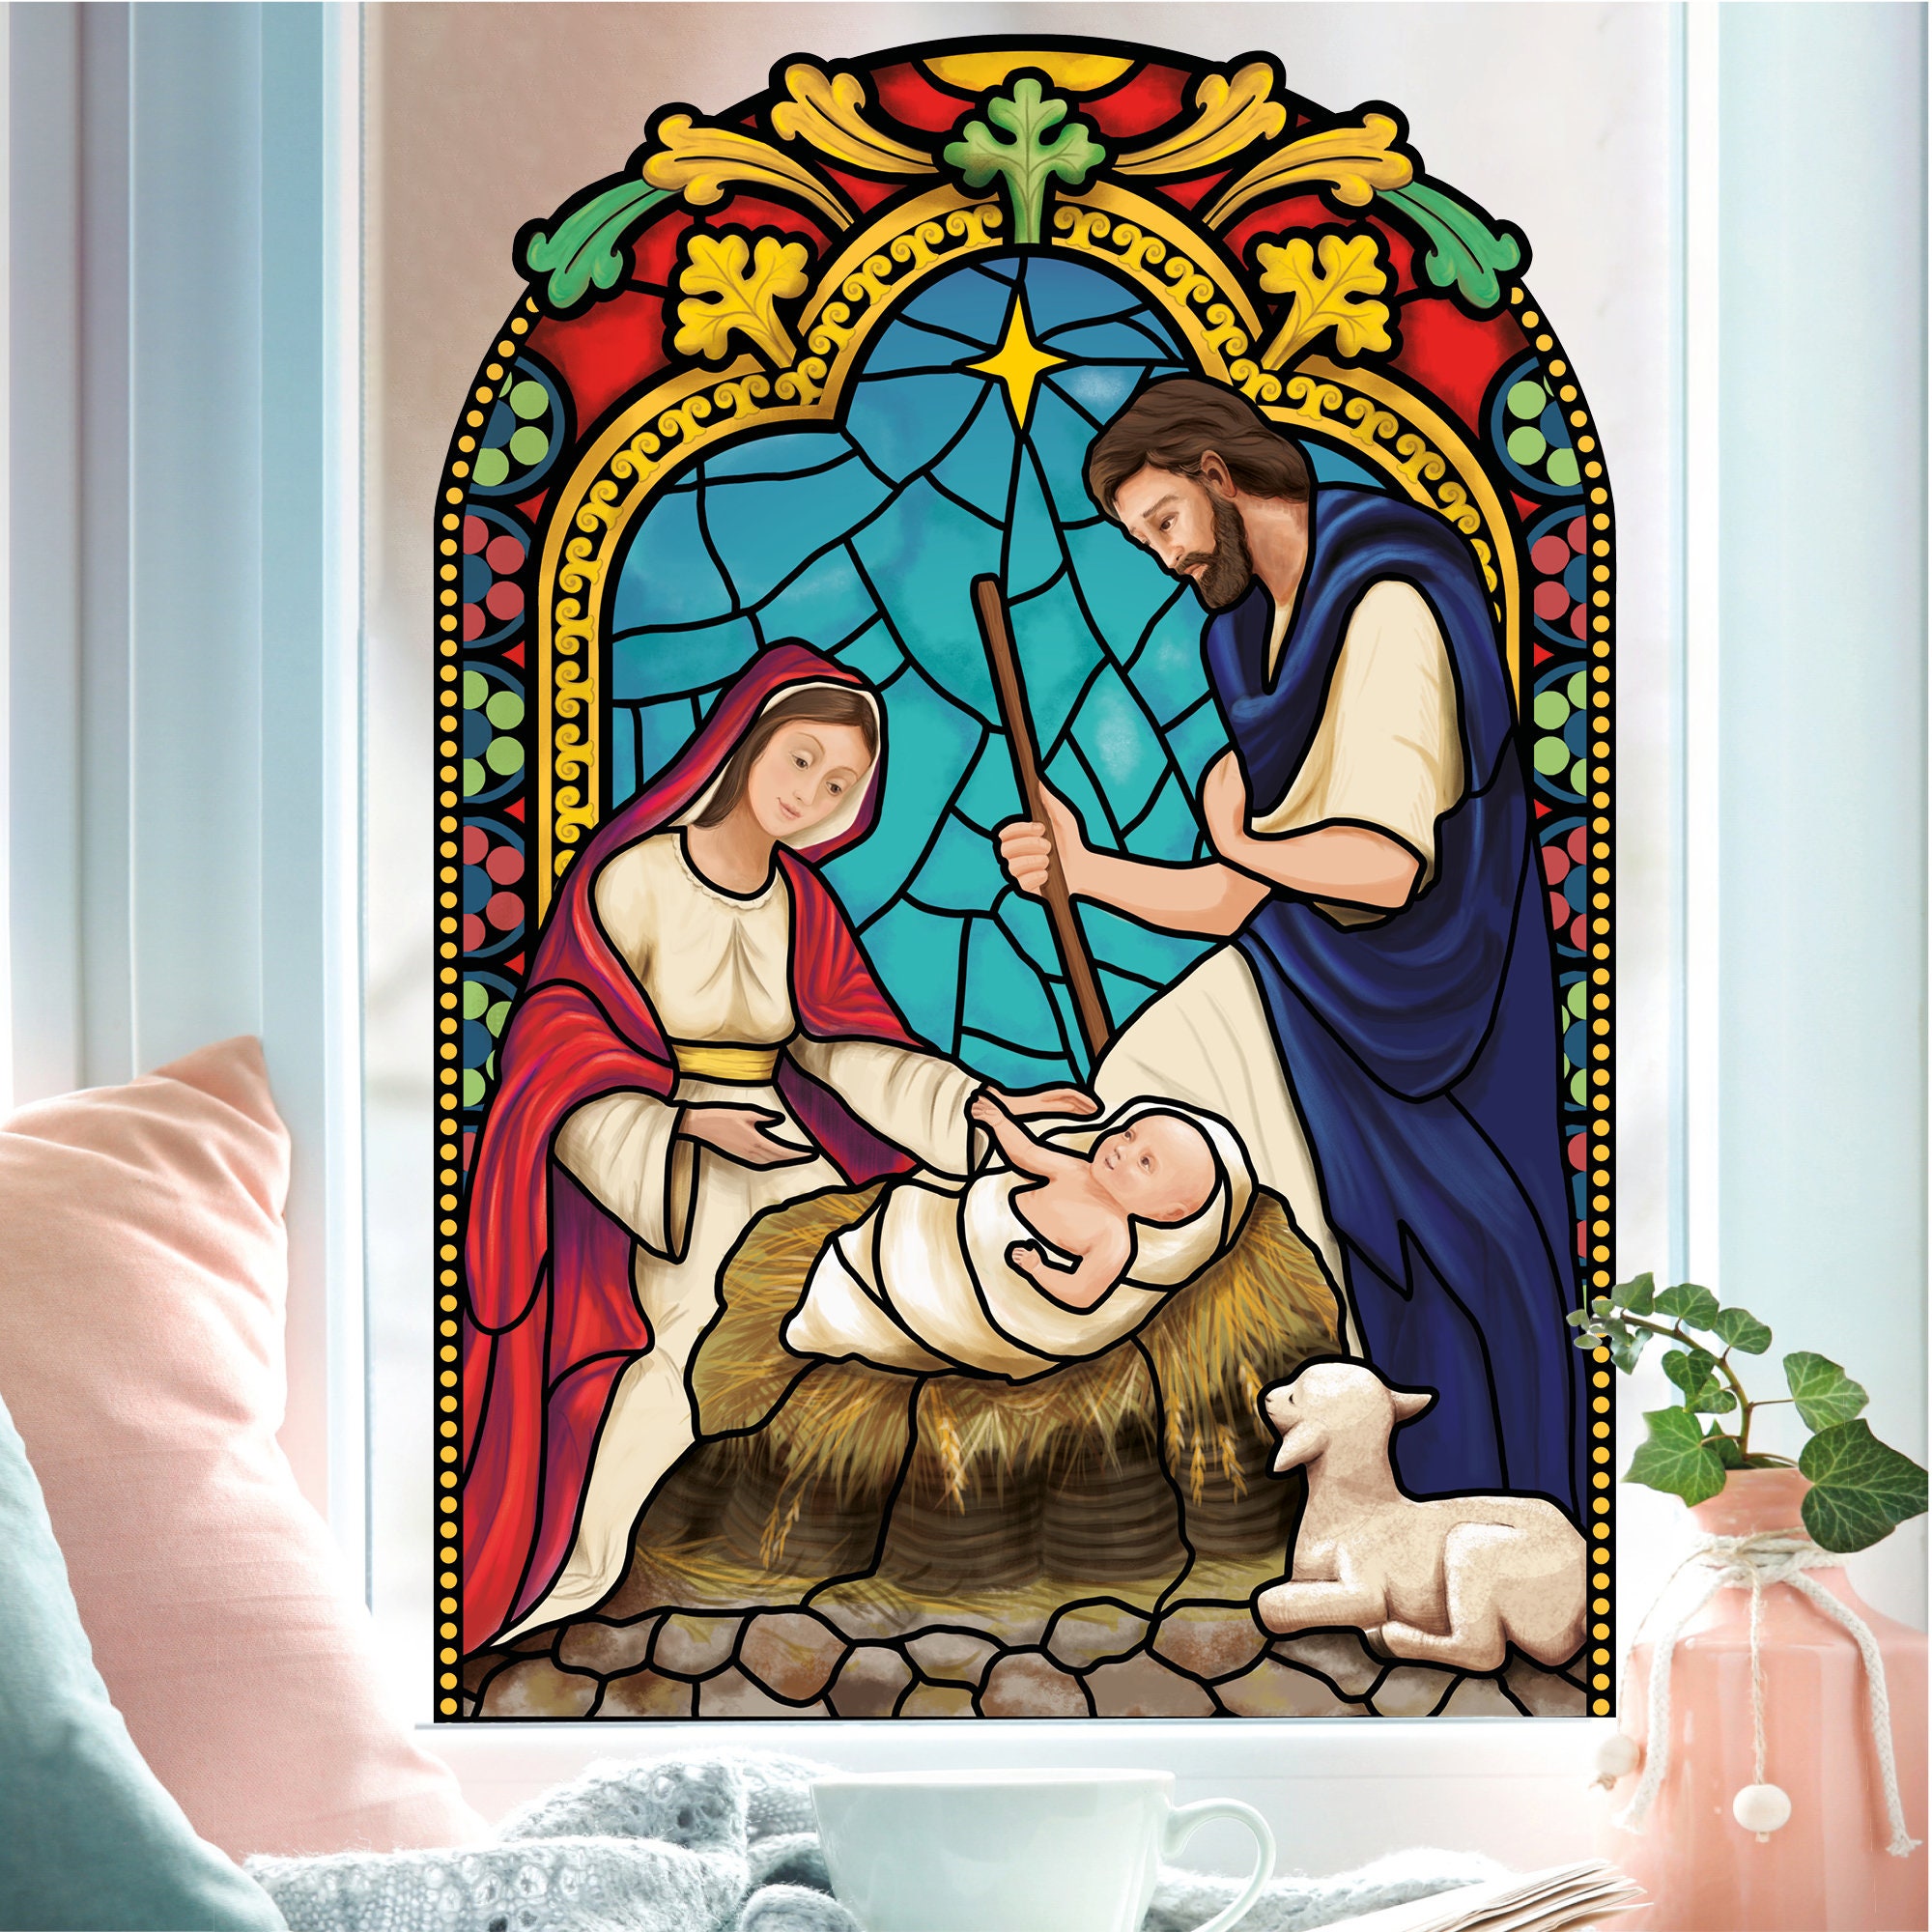 Fensterbild Winter Kirche Krippenbild Maria und Josef bunt farbig rund wiederverwendbare Fensteraufkleber Mosaik Weihnachten